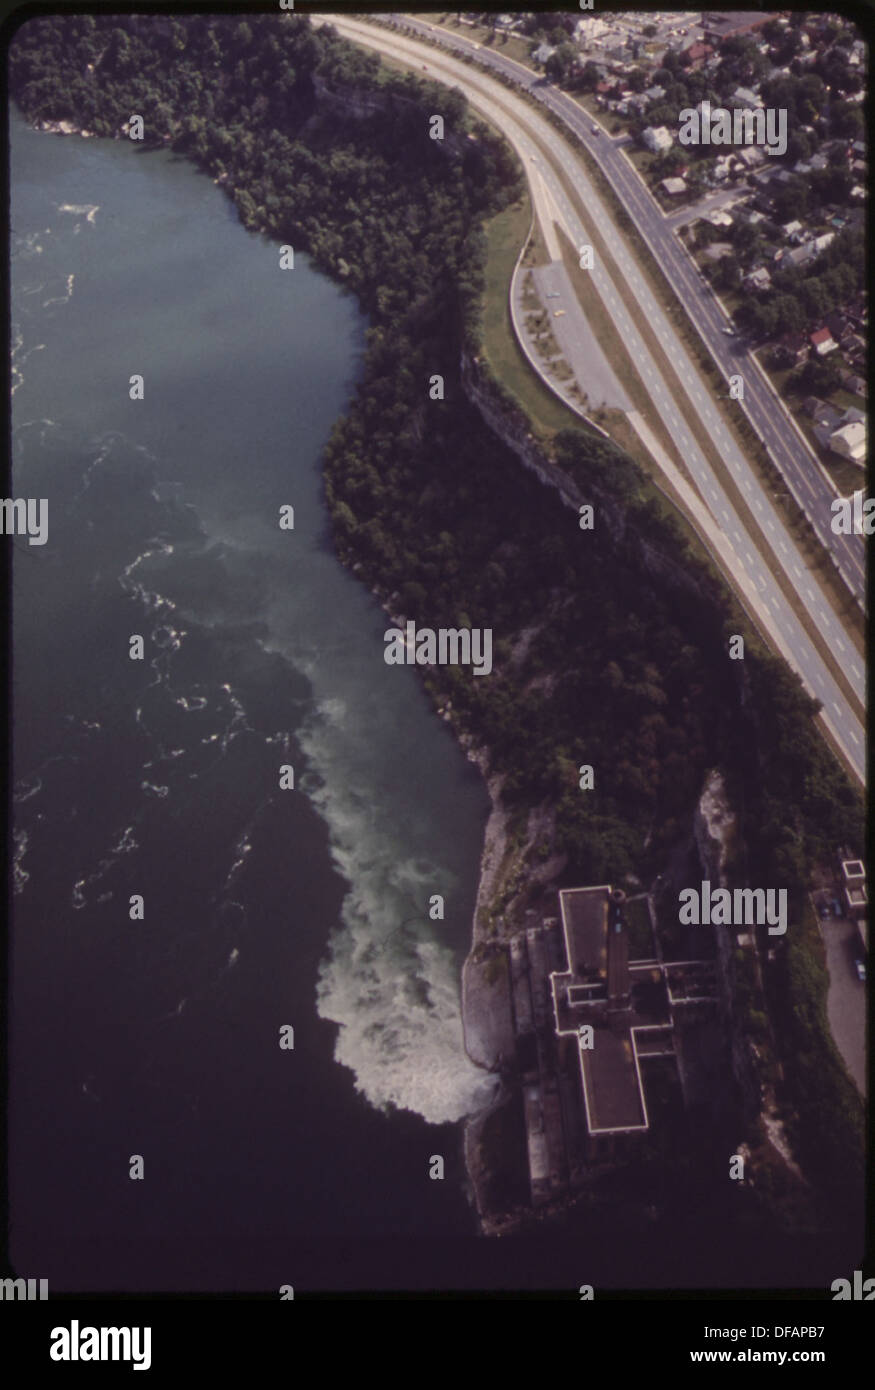 Vue aérienne DE LA RIVIÈRE NIAGARA, montrant les rejets d'EAUX USÉES DE LA VILLE DE NIAGARA FALLS. Cet effluent est clairement... 549497 Banque D'Images